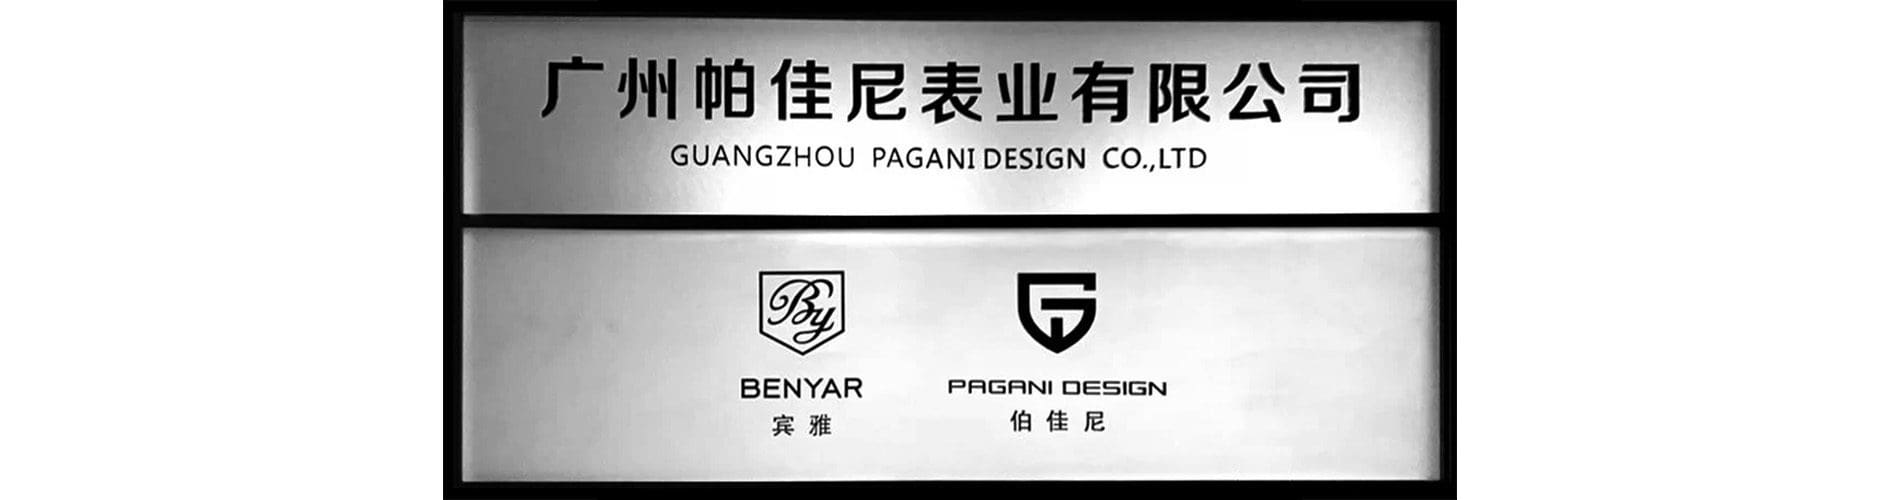 Guangzhou Pagani Design CO.,LTD